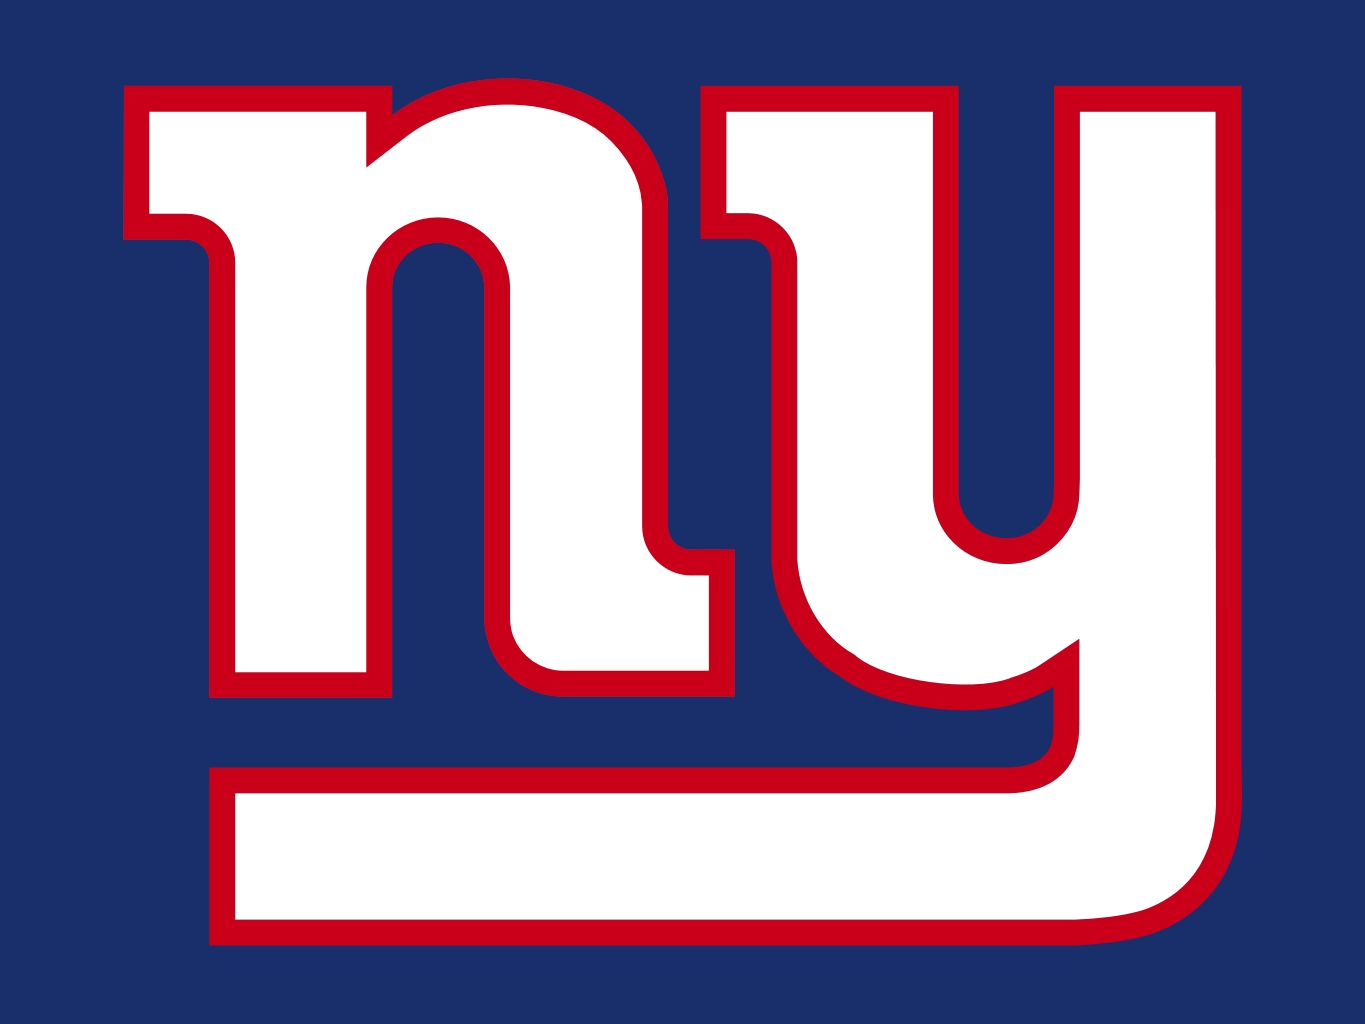 New York Giants Printable Logo